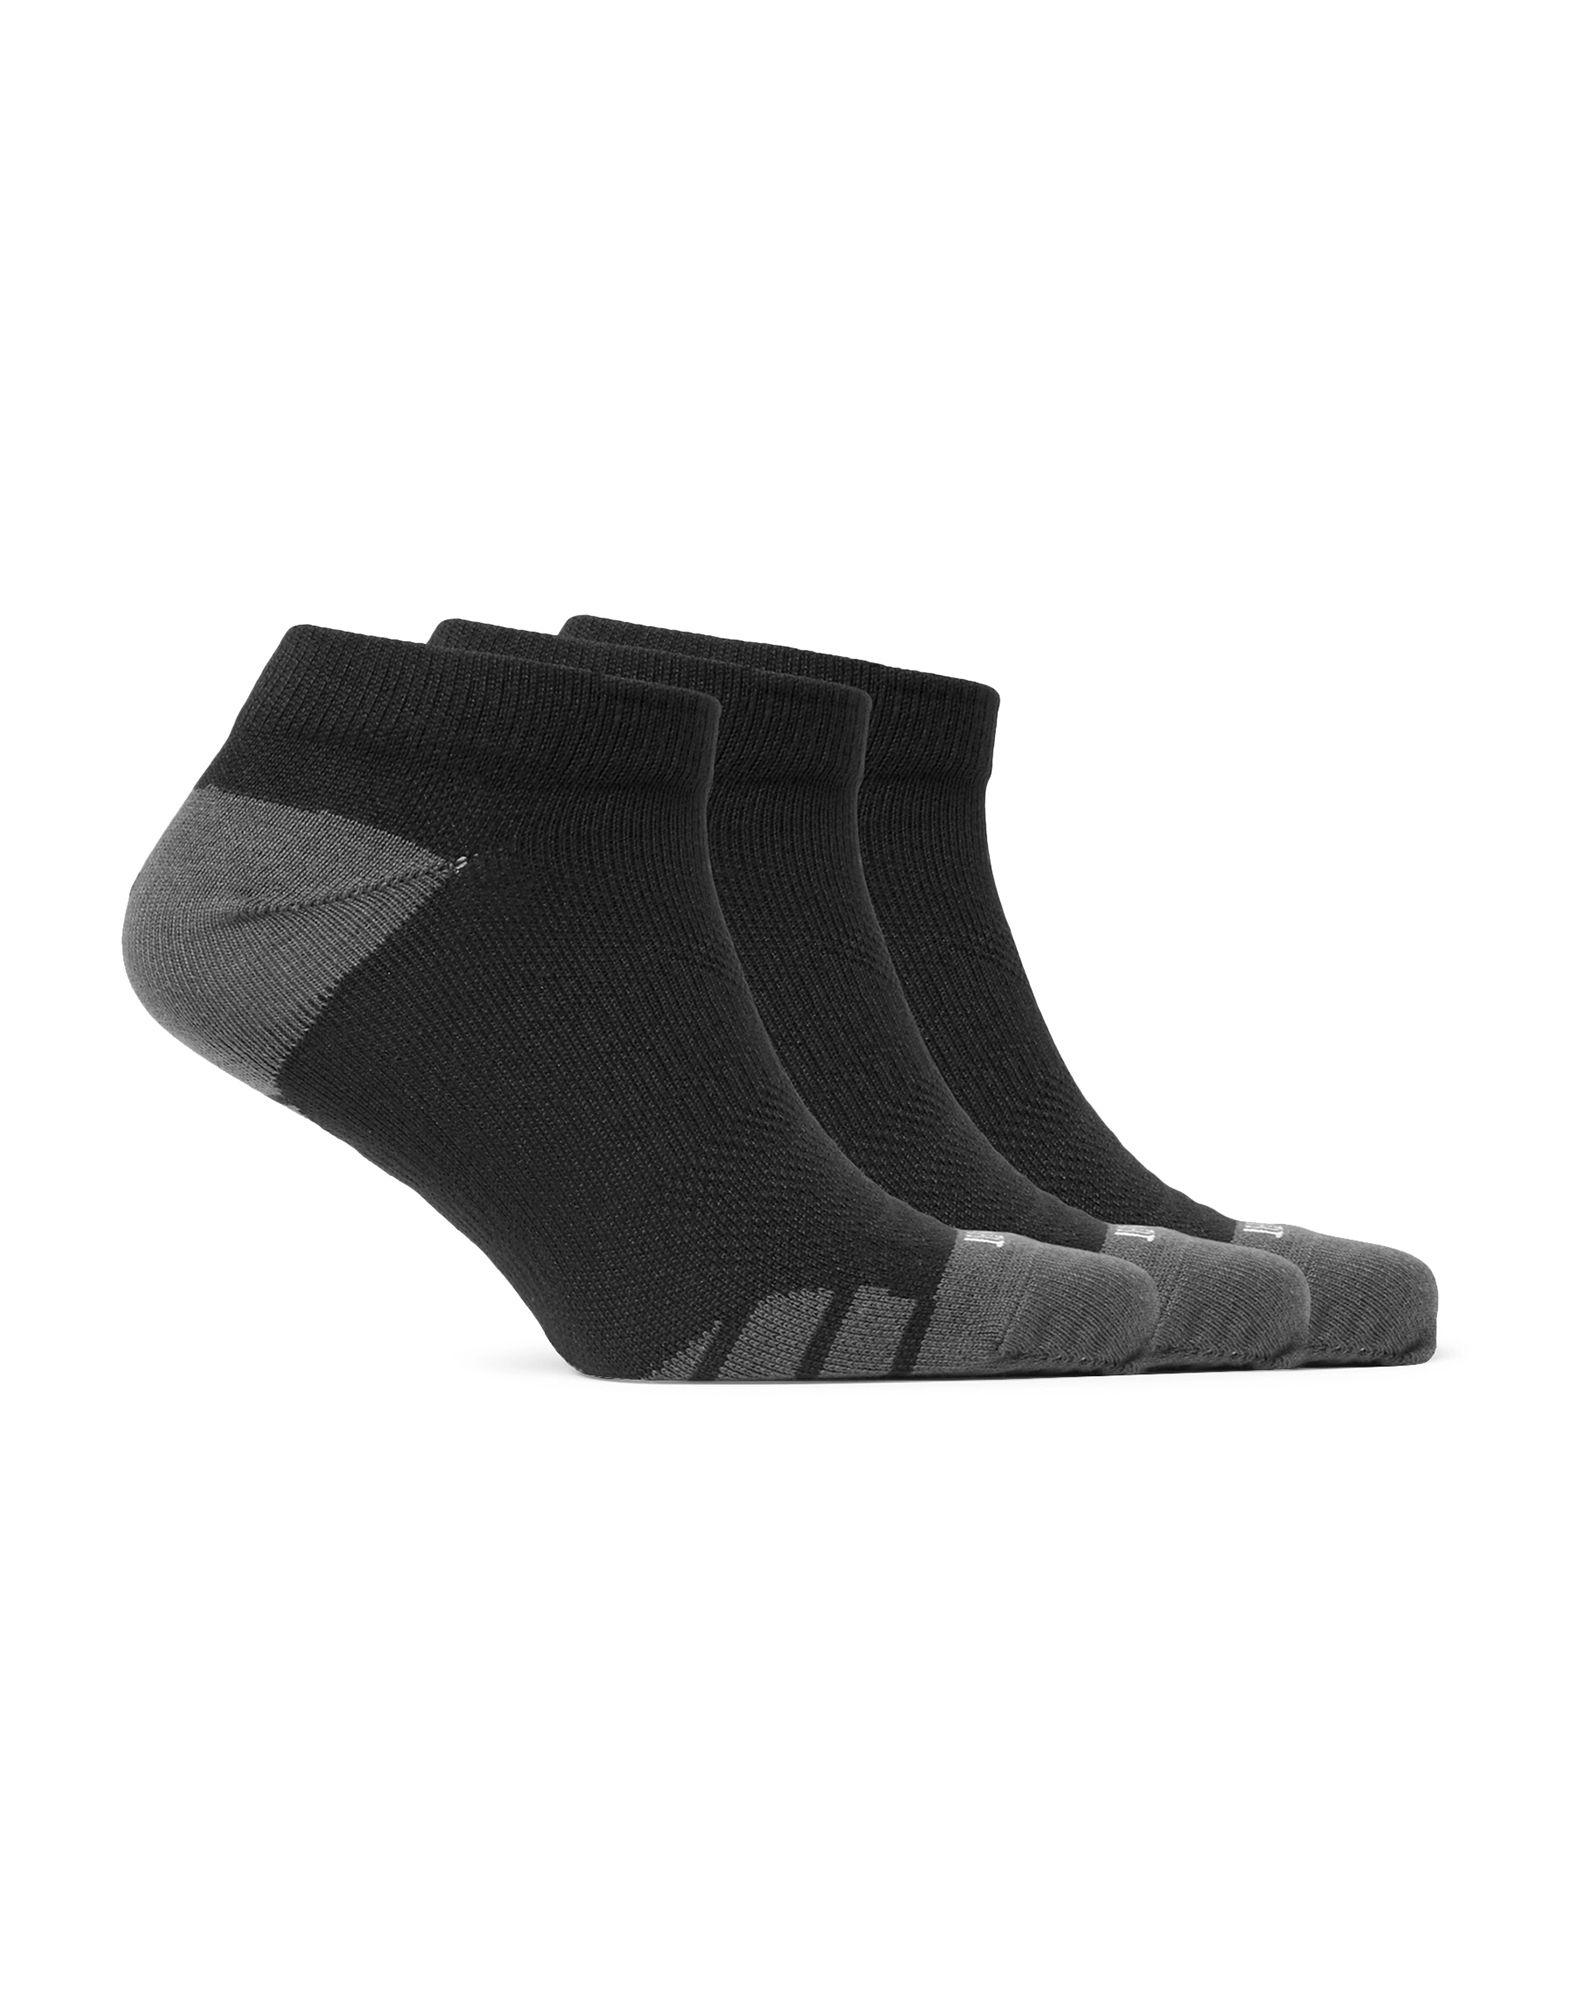 Lyst - Nike Short Socks in Black for Men